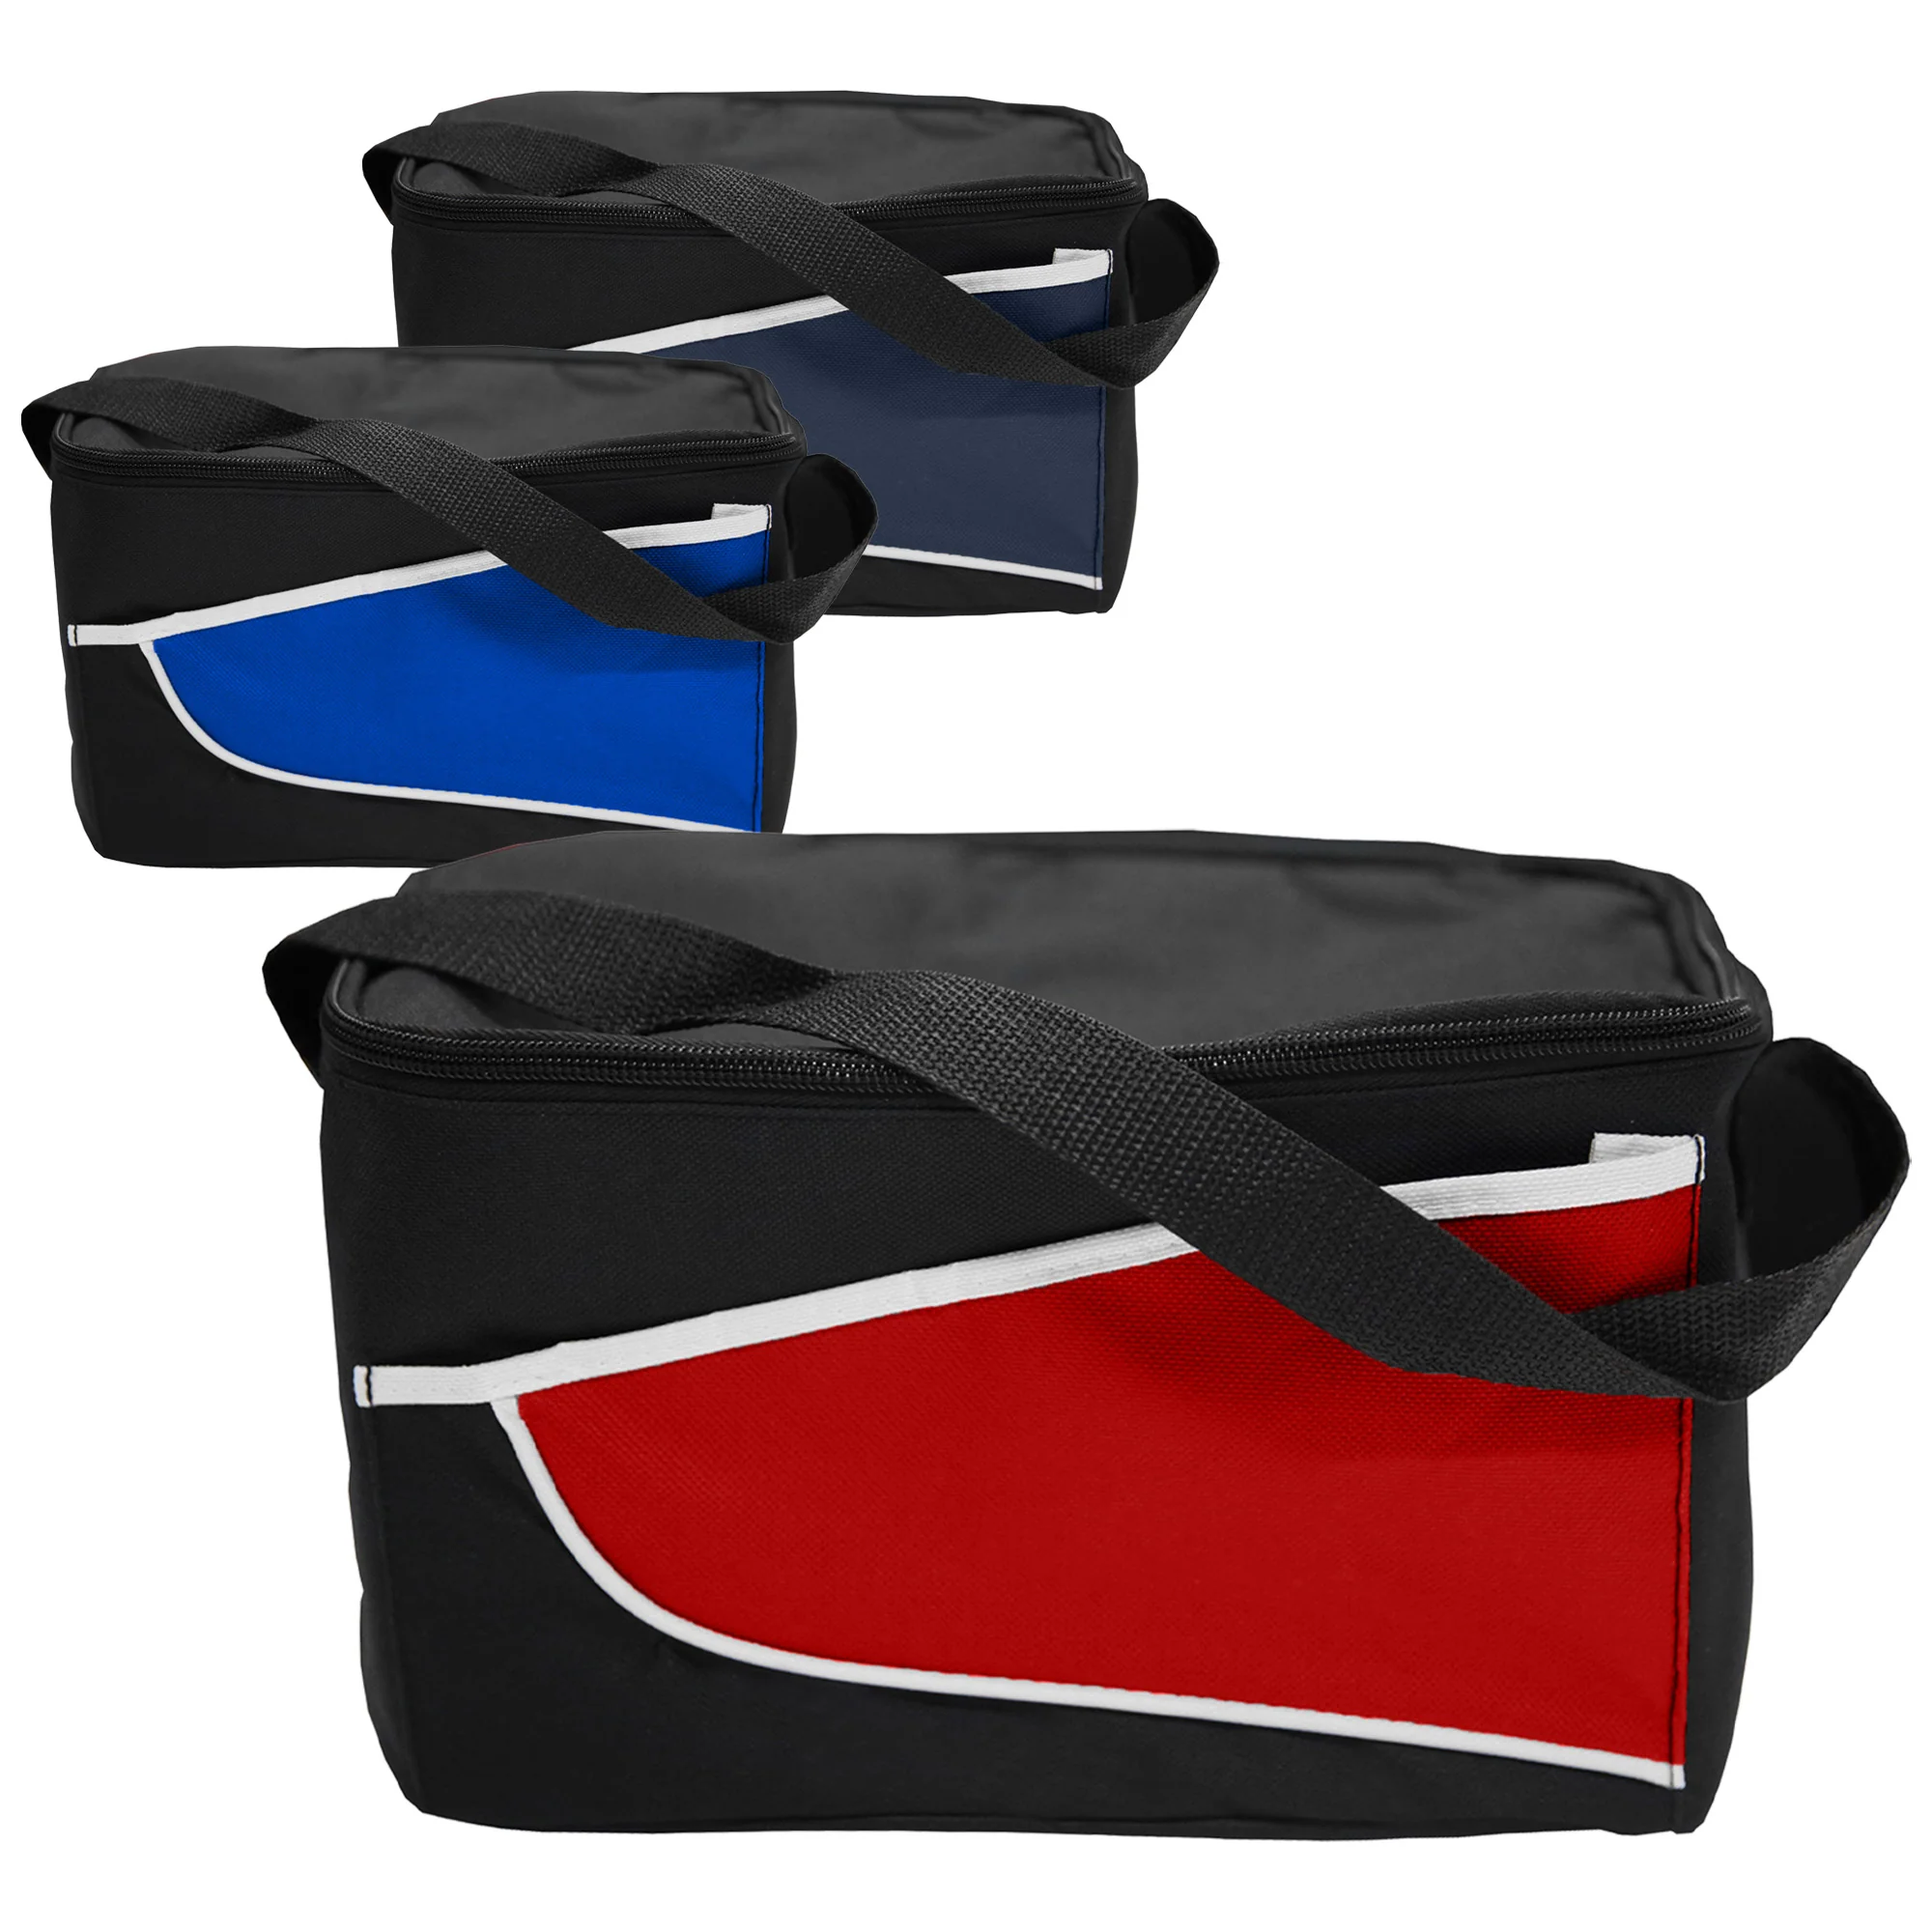 Custom (Royal Blue) Nylon Cooler Bag Coloured Online Perth Australia